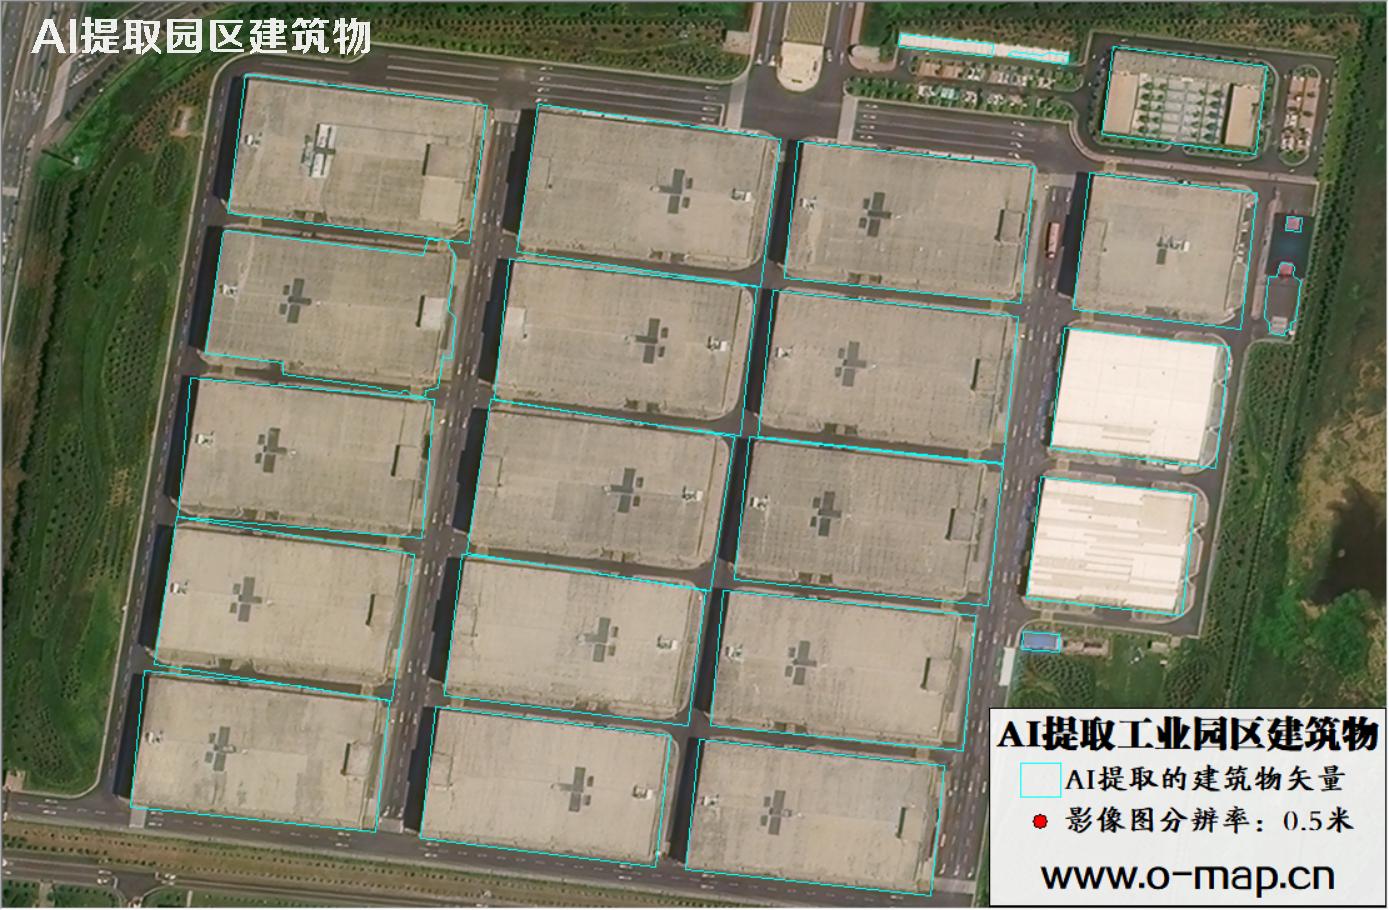 AI技术用于园区卫星影像中提取大型厂房建筑物矢量